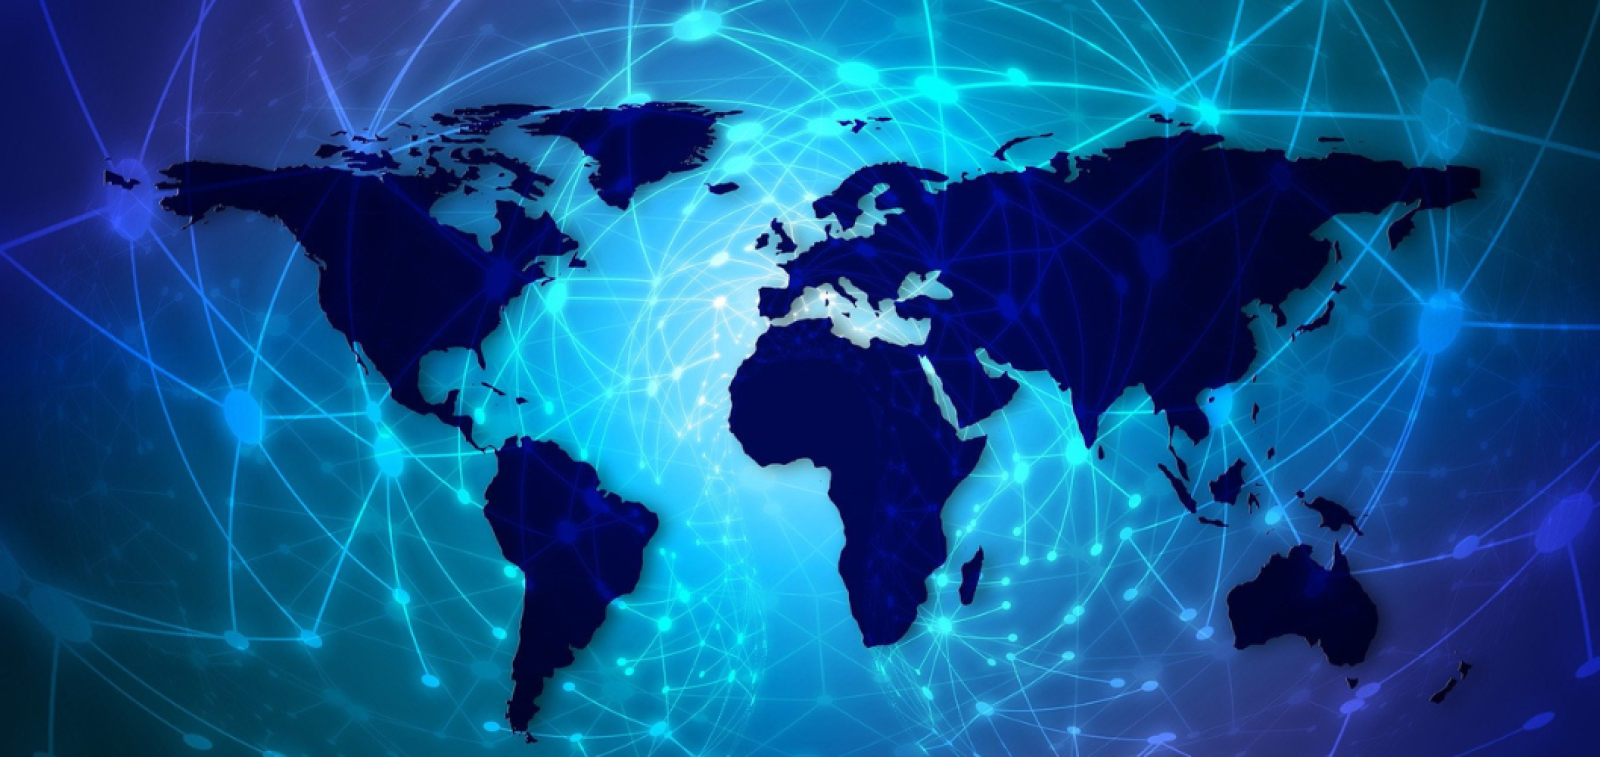 Maailmankartta sinisessä väriskaalassa, jonka päällä leijuu digitaalisia verkostoja ja tietojenkäsittelyn solmukohtia